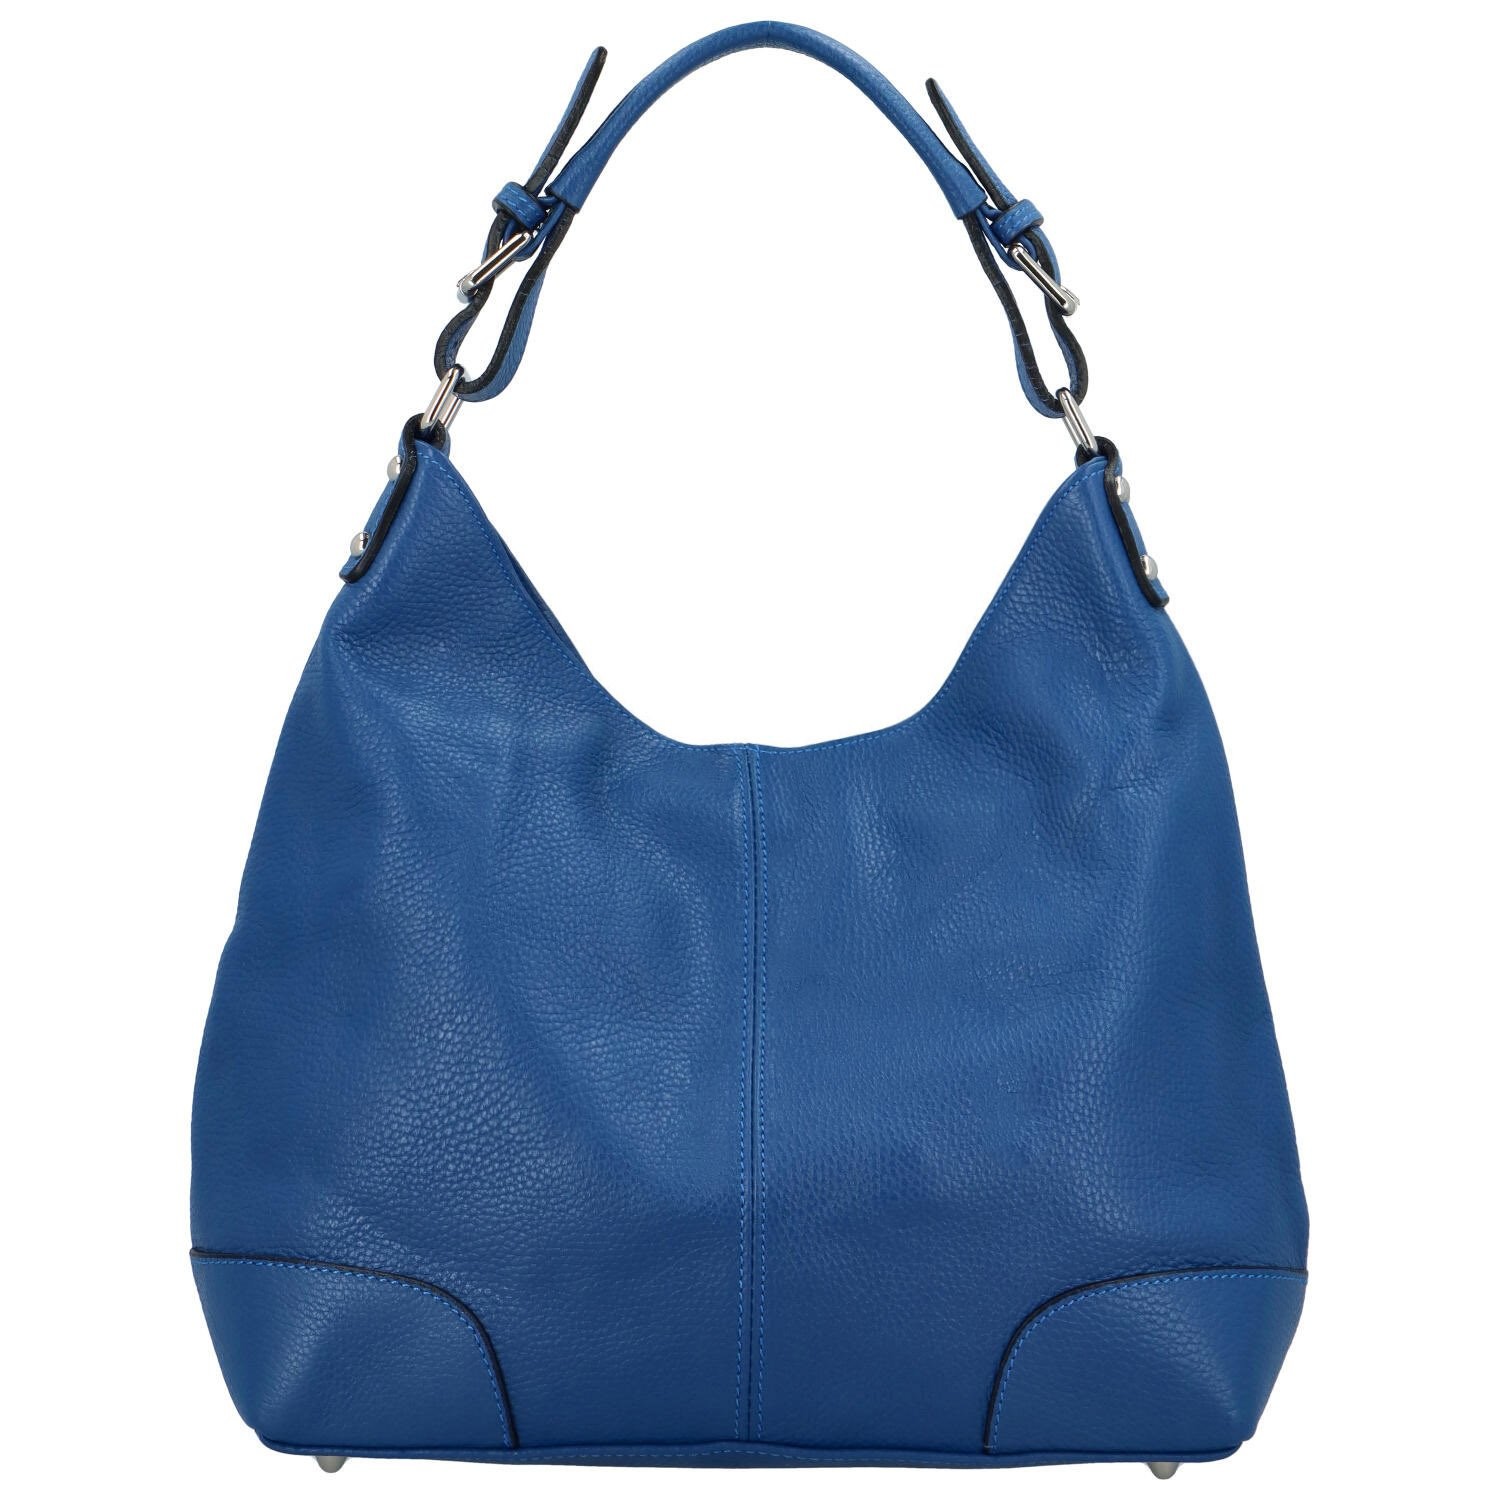 Dámská kožená kabelka přes rameno modrá - Delami Lucisa modrá